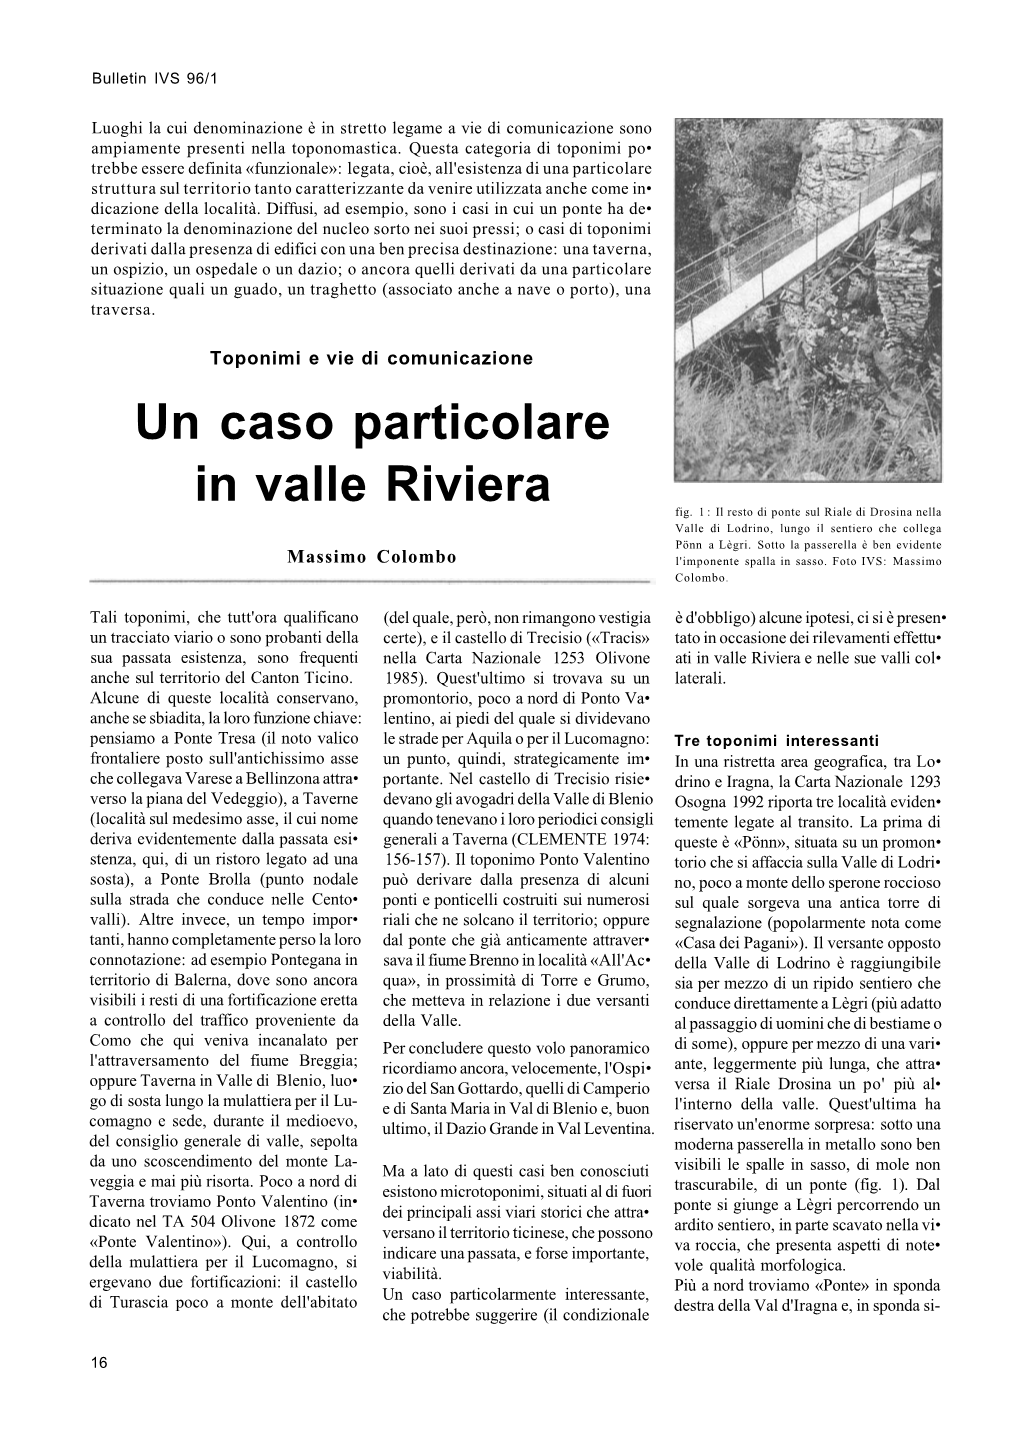 Vie Storiche E Toponimi, in Bulletin IVS 96/1